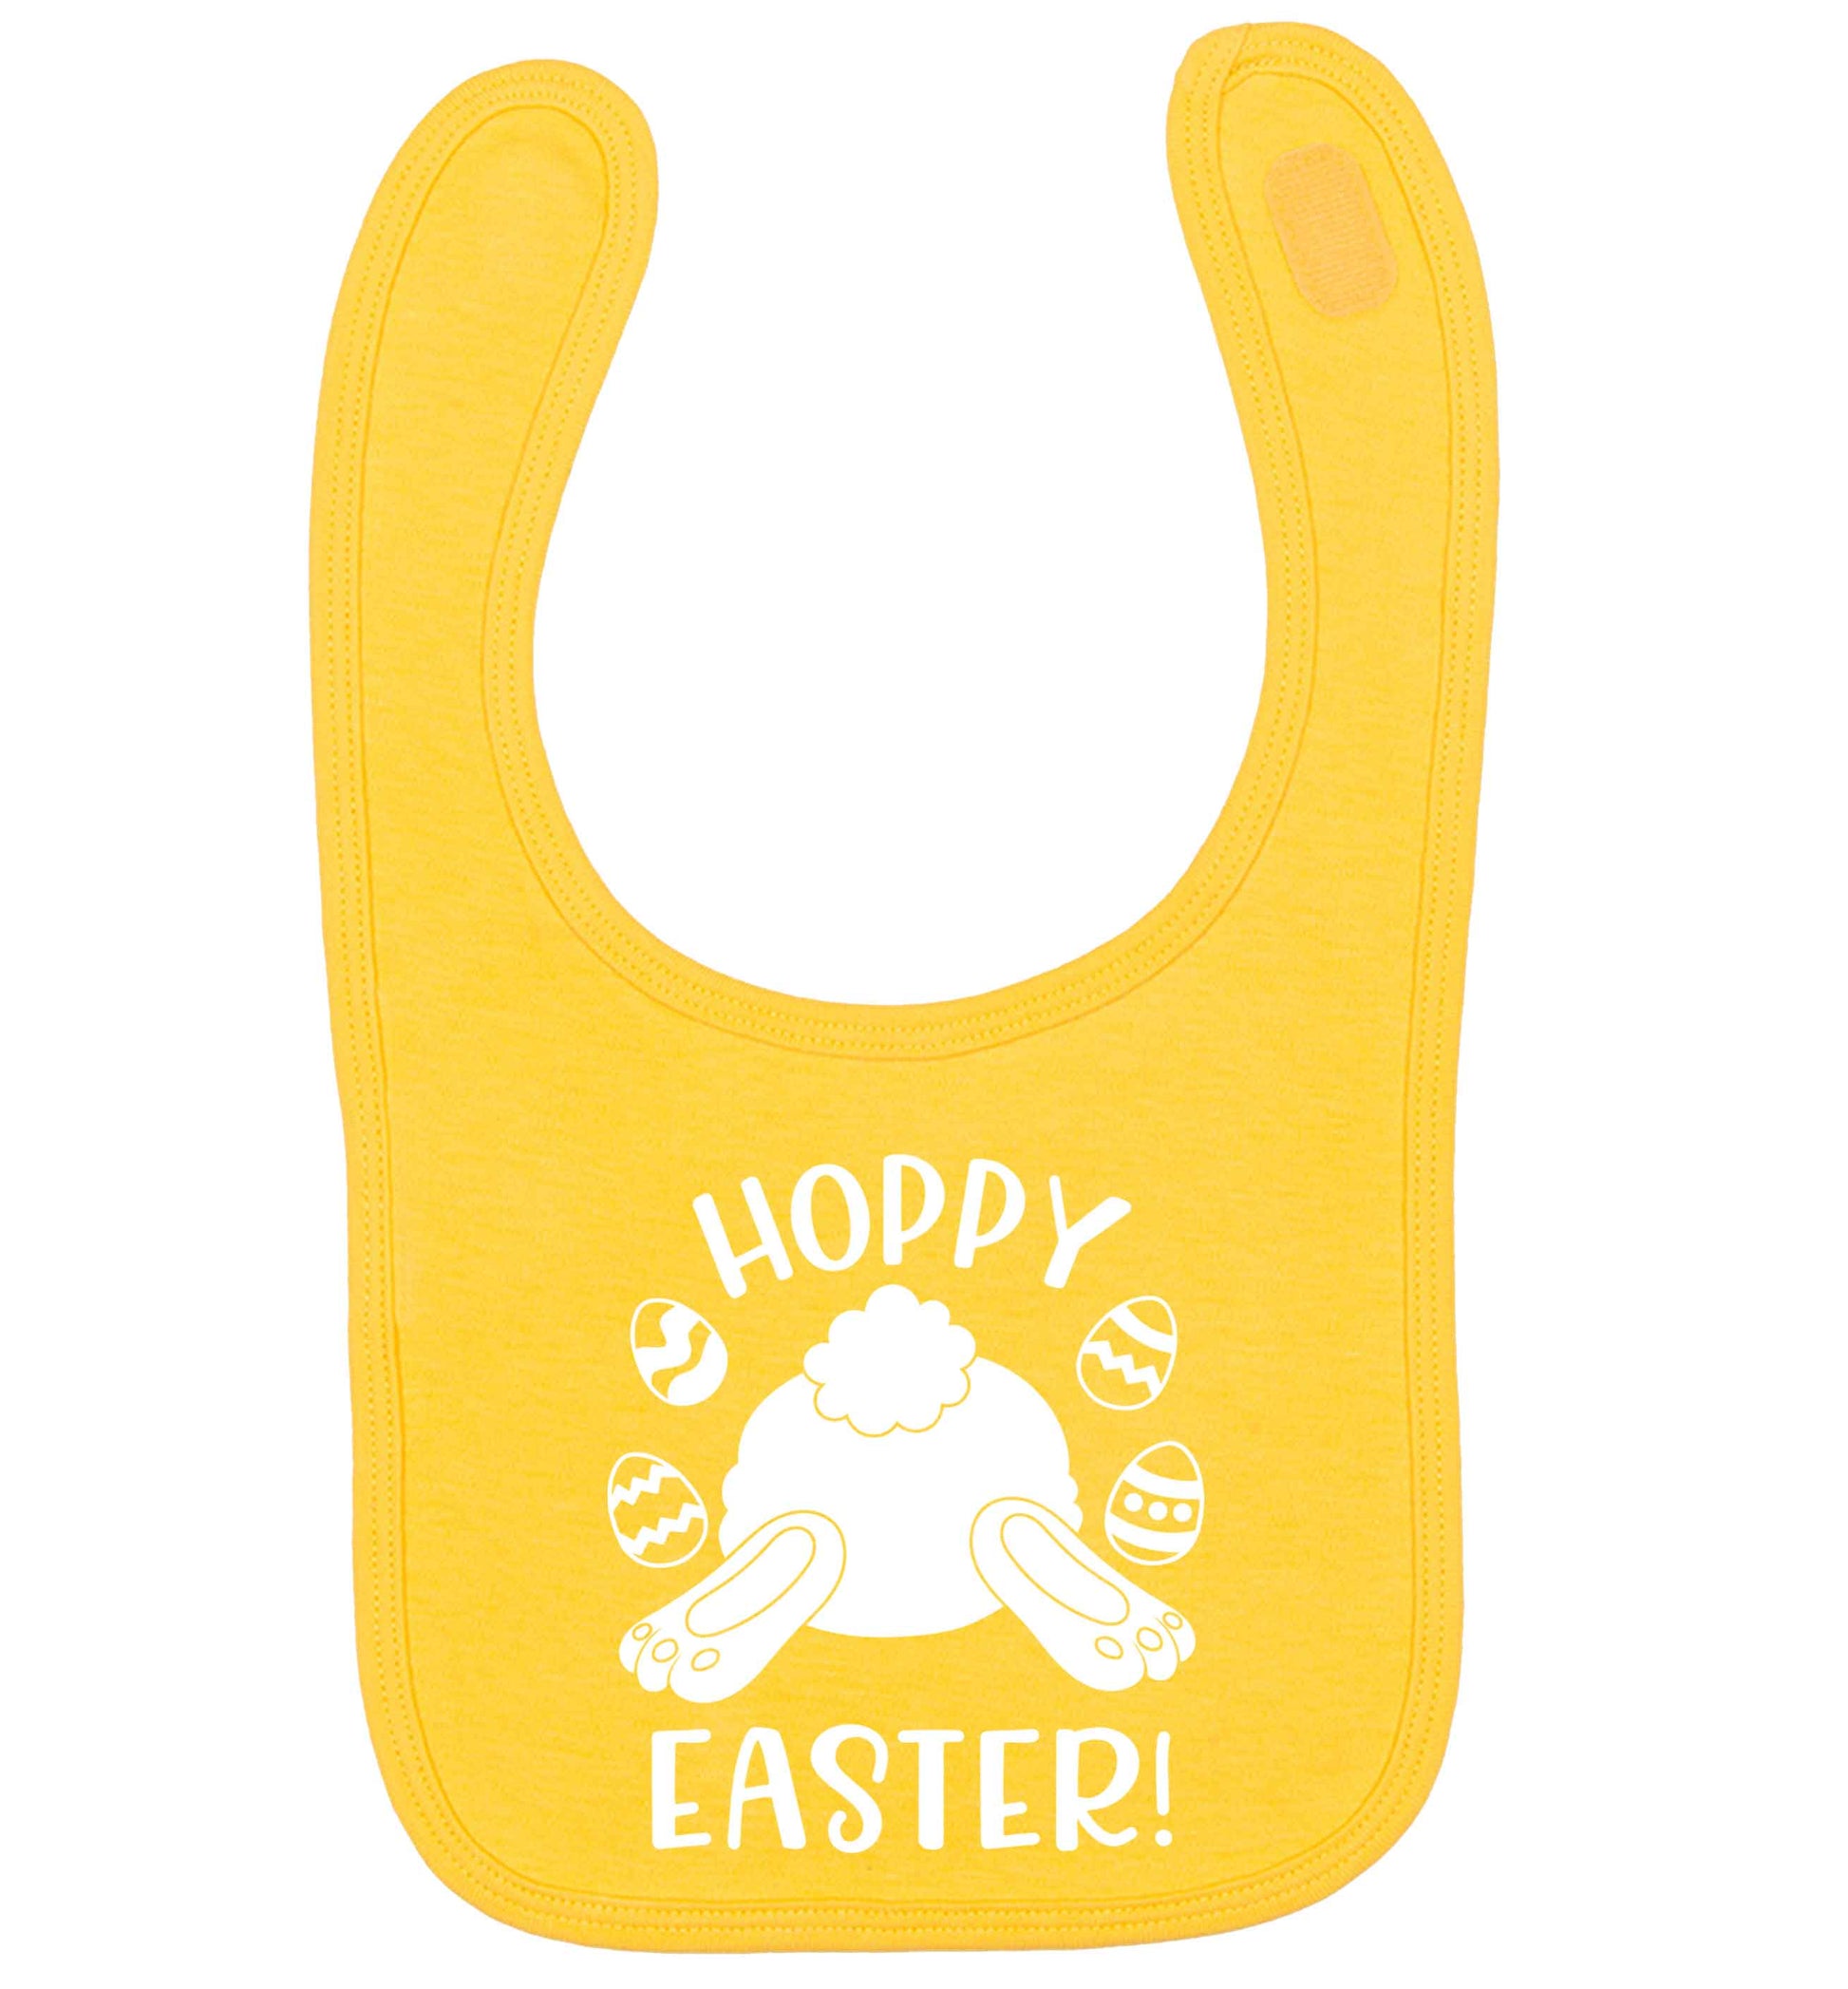 Hoppy Easter yellow baby bib